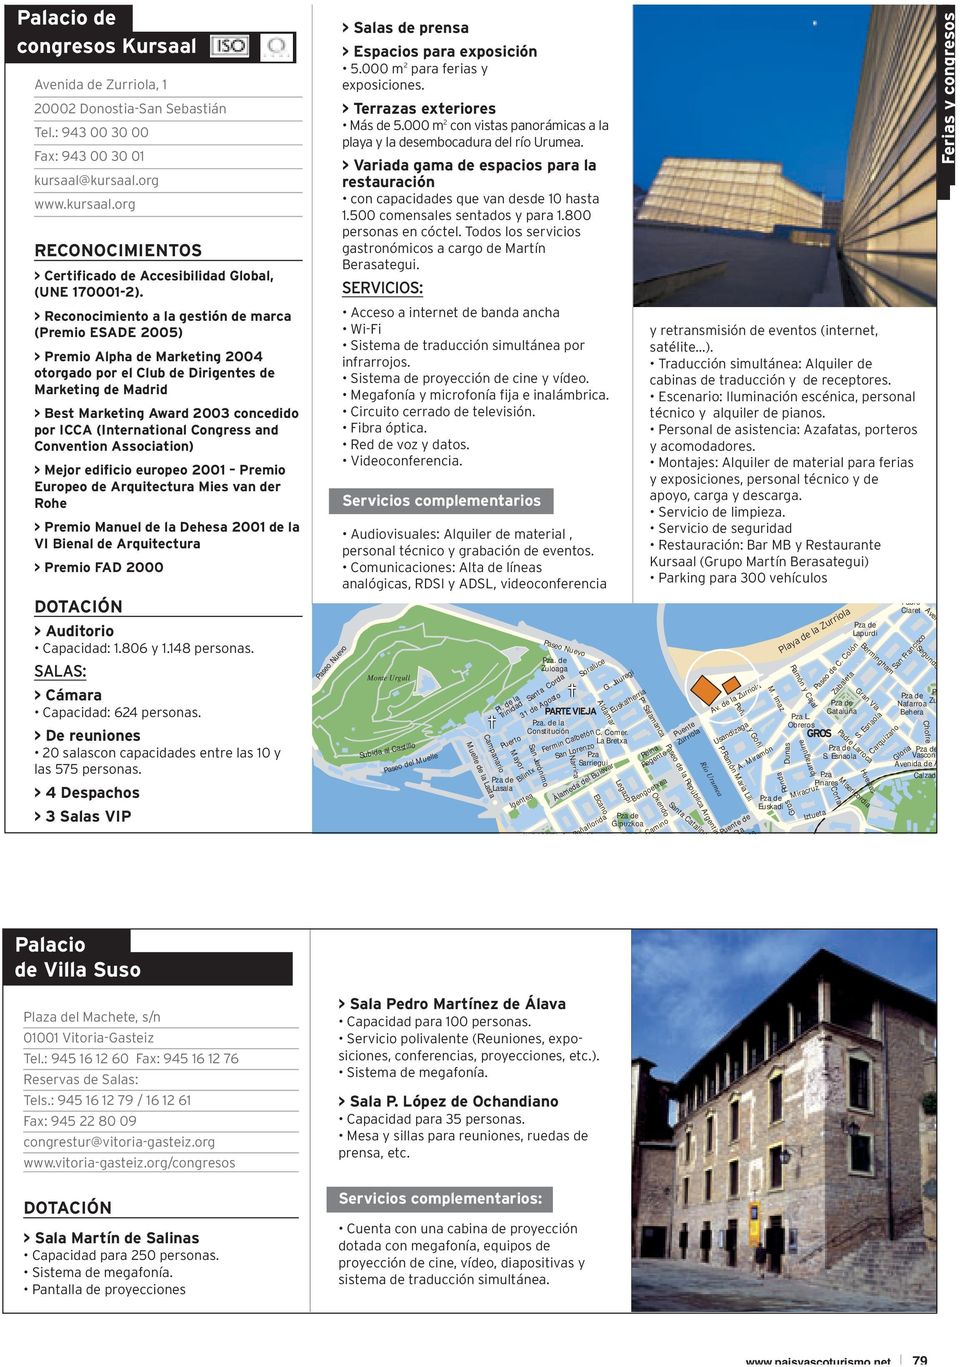 (International Congress and Convention Association) > Mejor edificio europeo 2001 Premio Europeo de Arquitectura Mies van der Rohe > Premio Manuel de la Dehesa 2001 de la VI Bienal de Arquitectura >